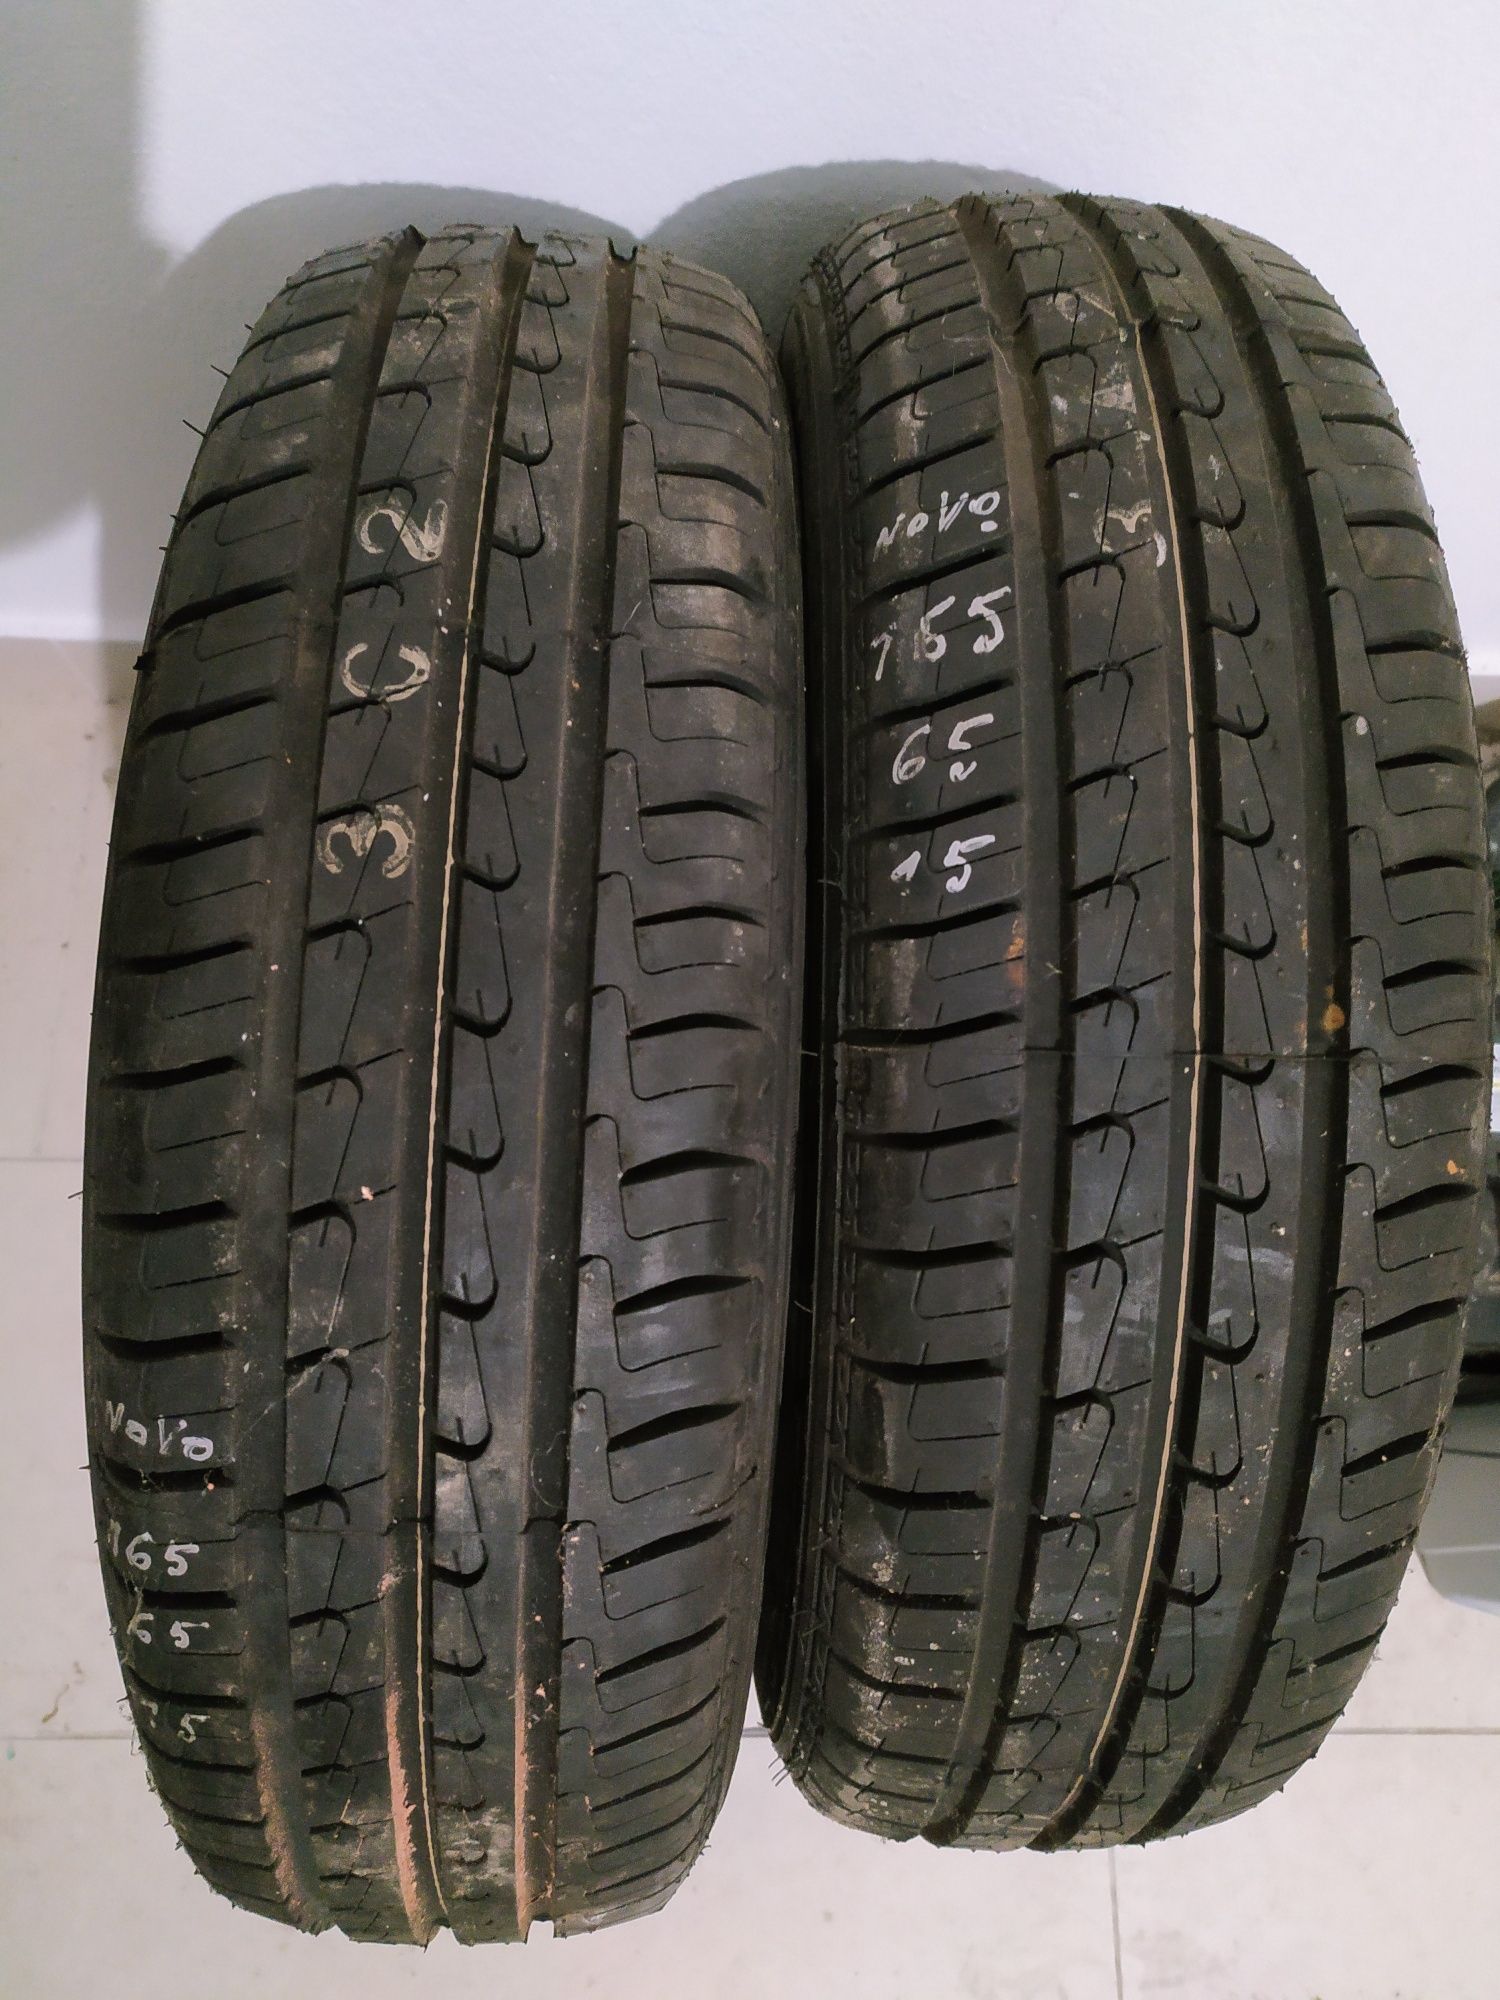 2 pneus novos 165 65 R15